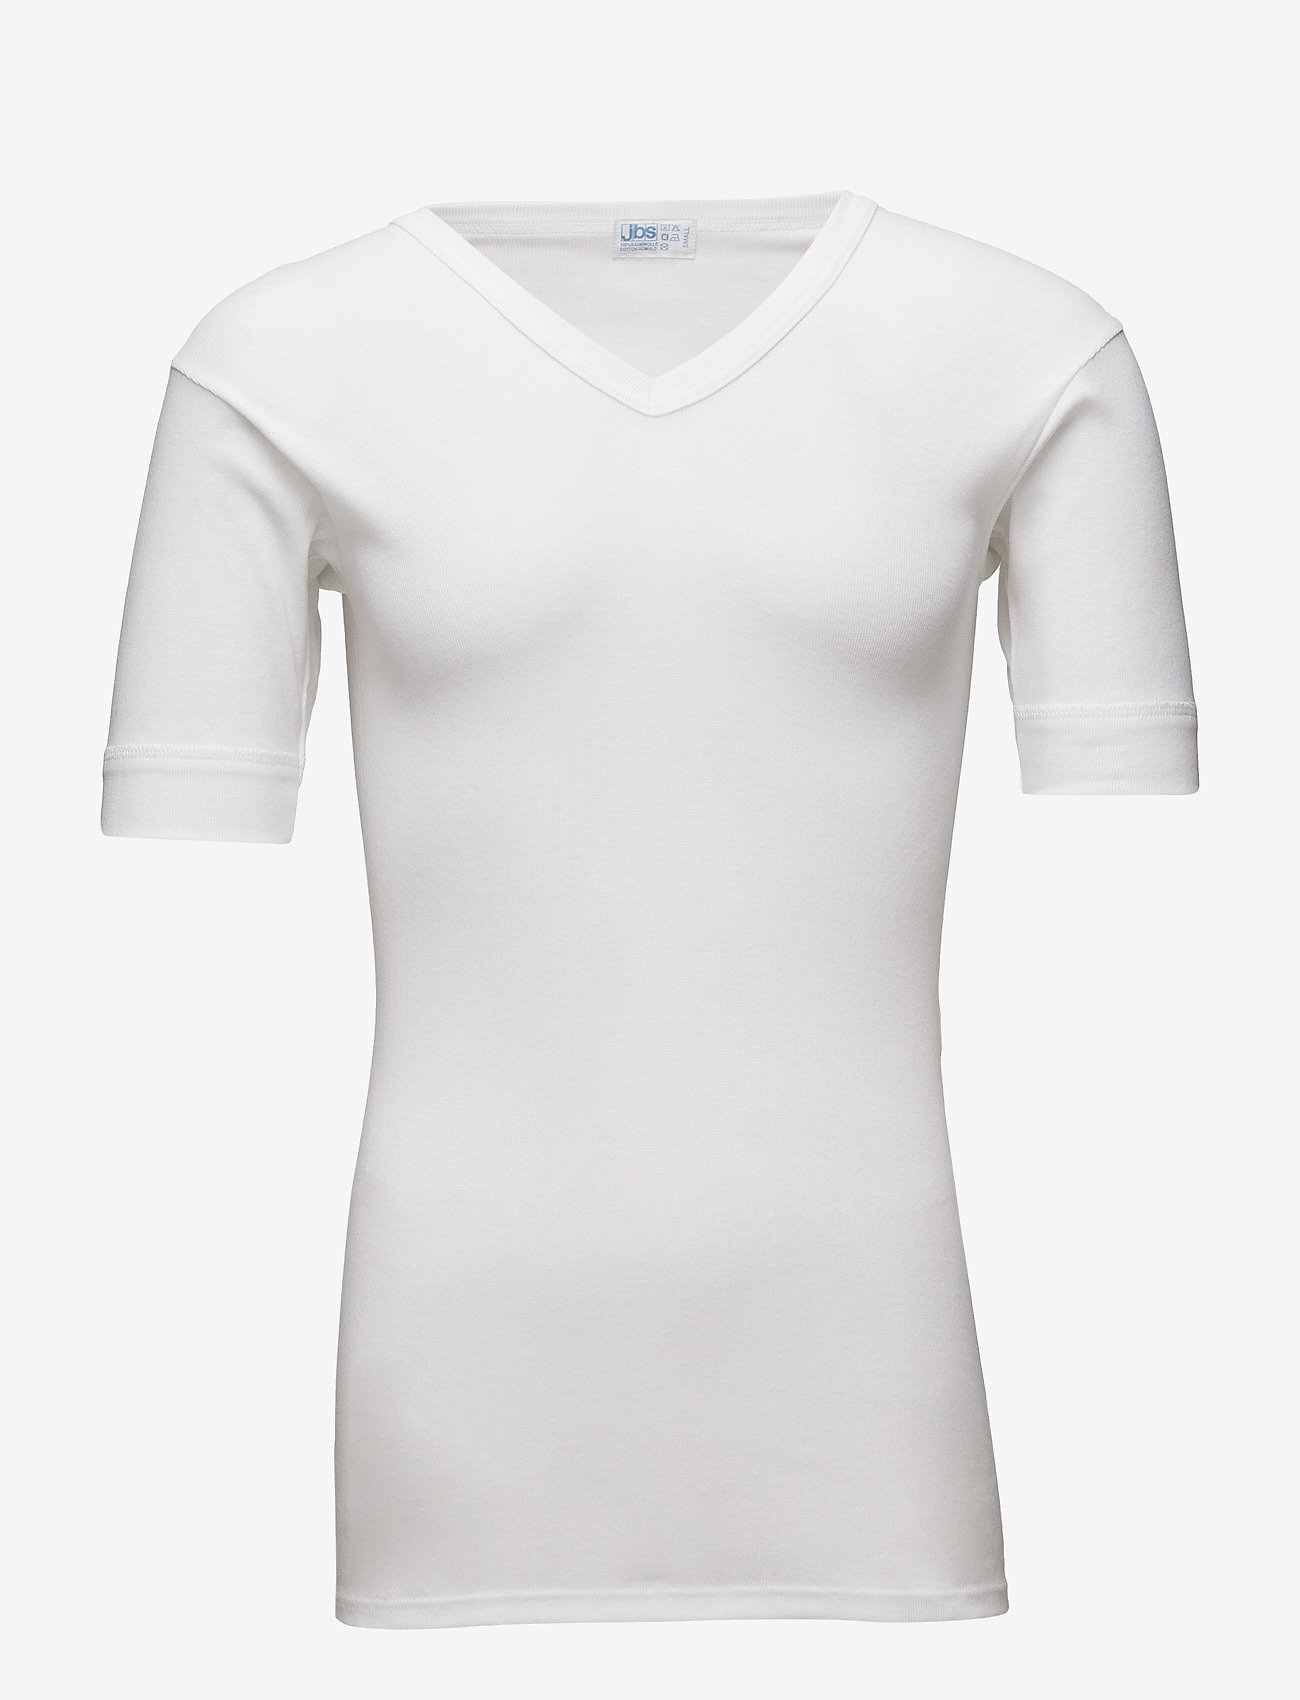 JBS - Original v-neck tee - laisvalaikio marškinėliai - white - 0